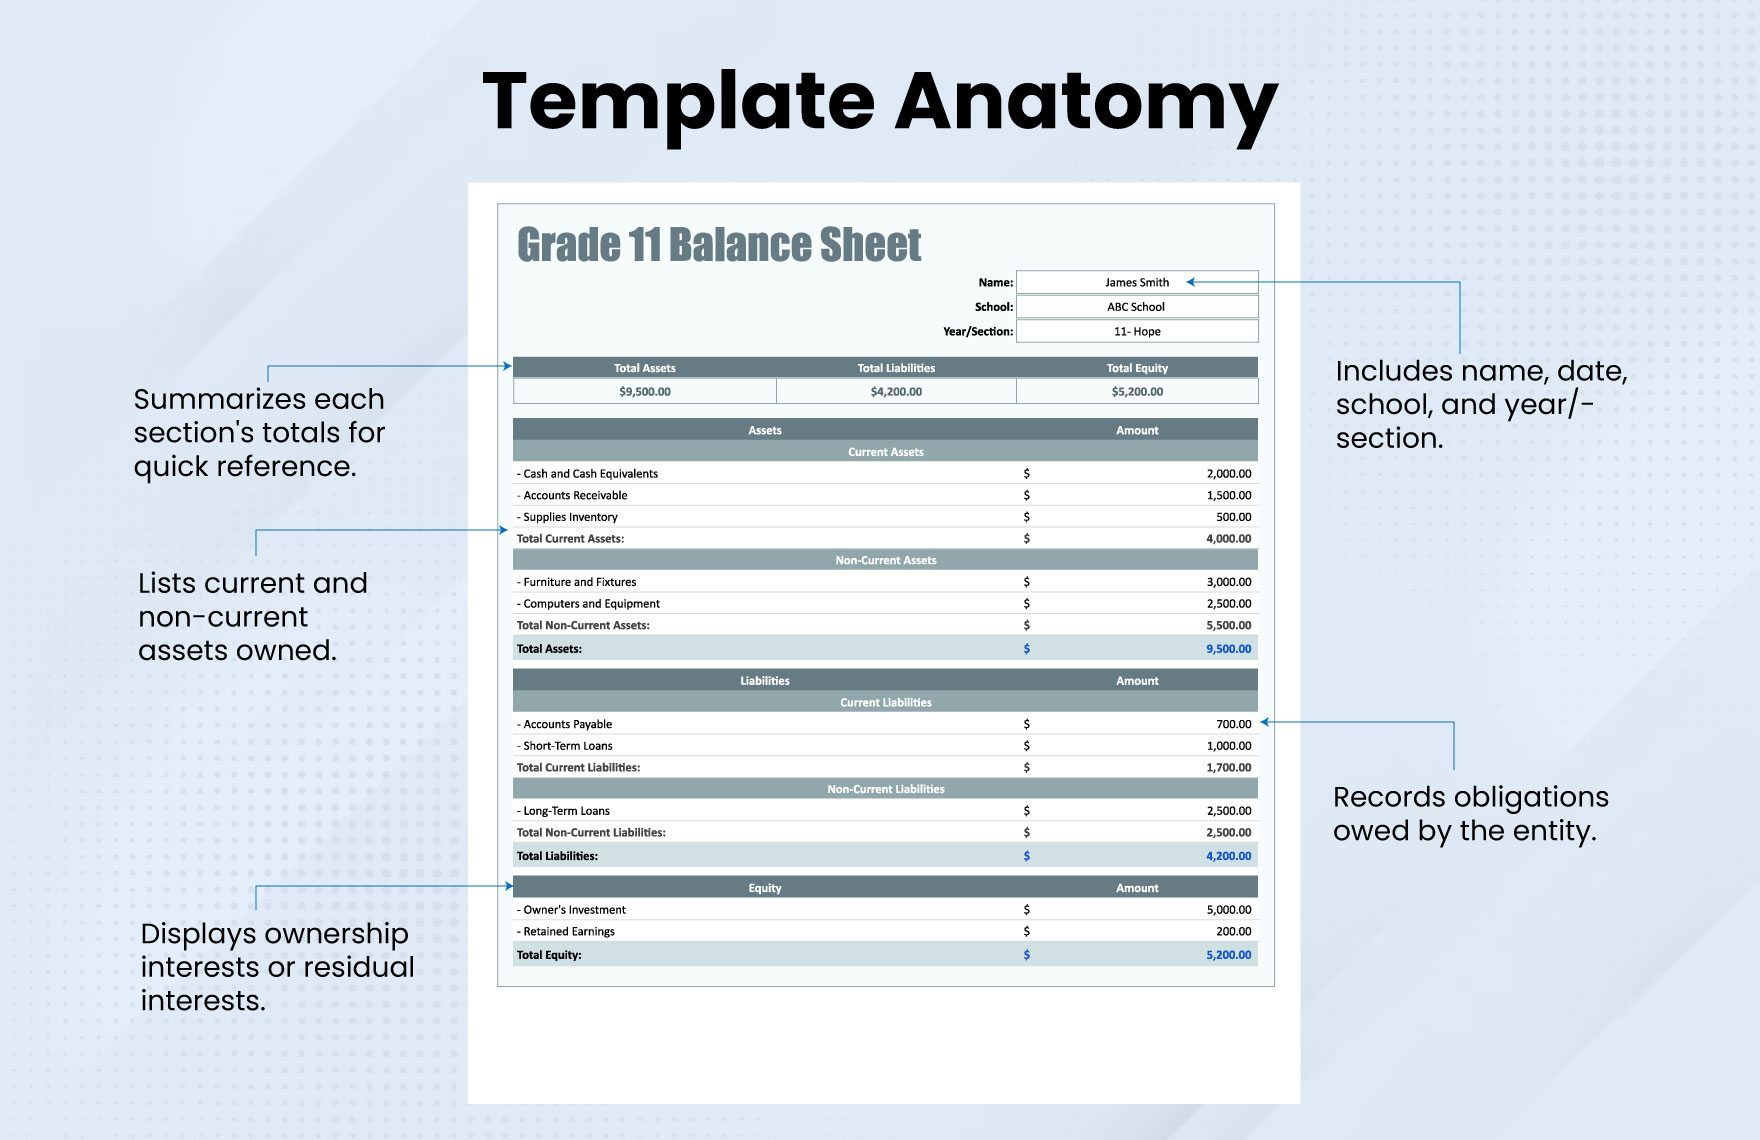 Grade 11 Balance Sheet Template